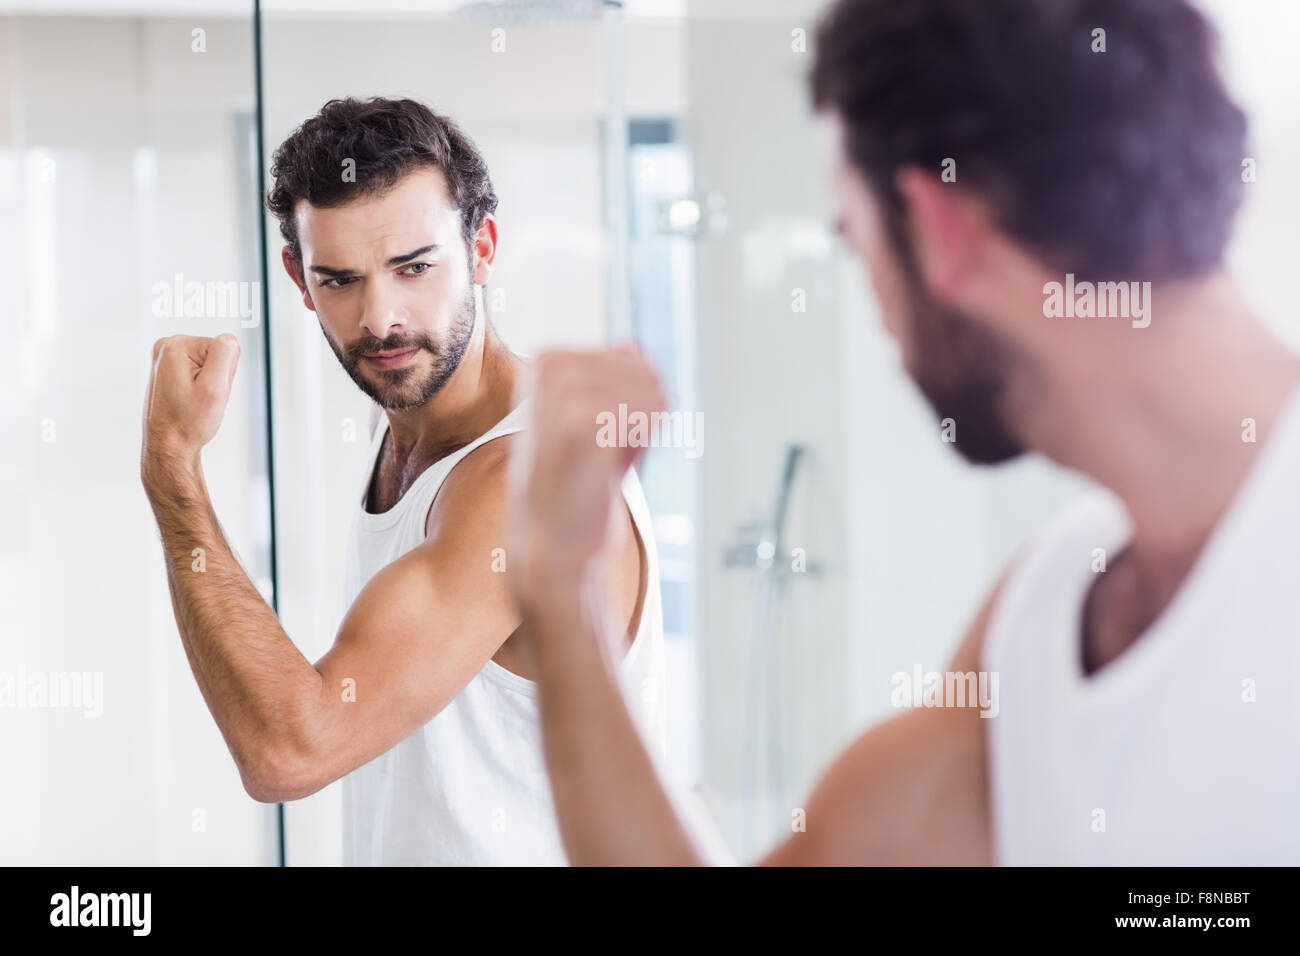 Hombre sonriendo mirando sus bíceps en espejo Foto de stock